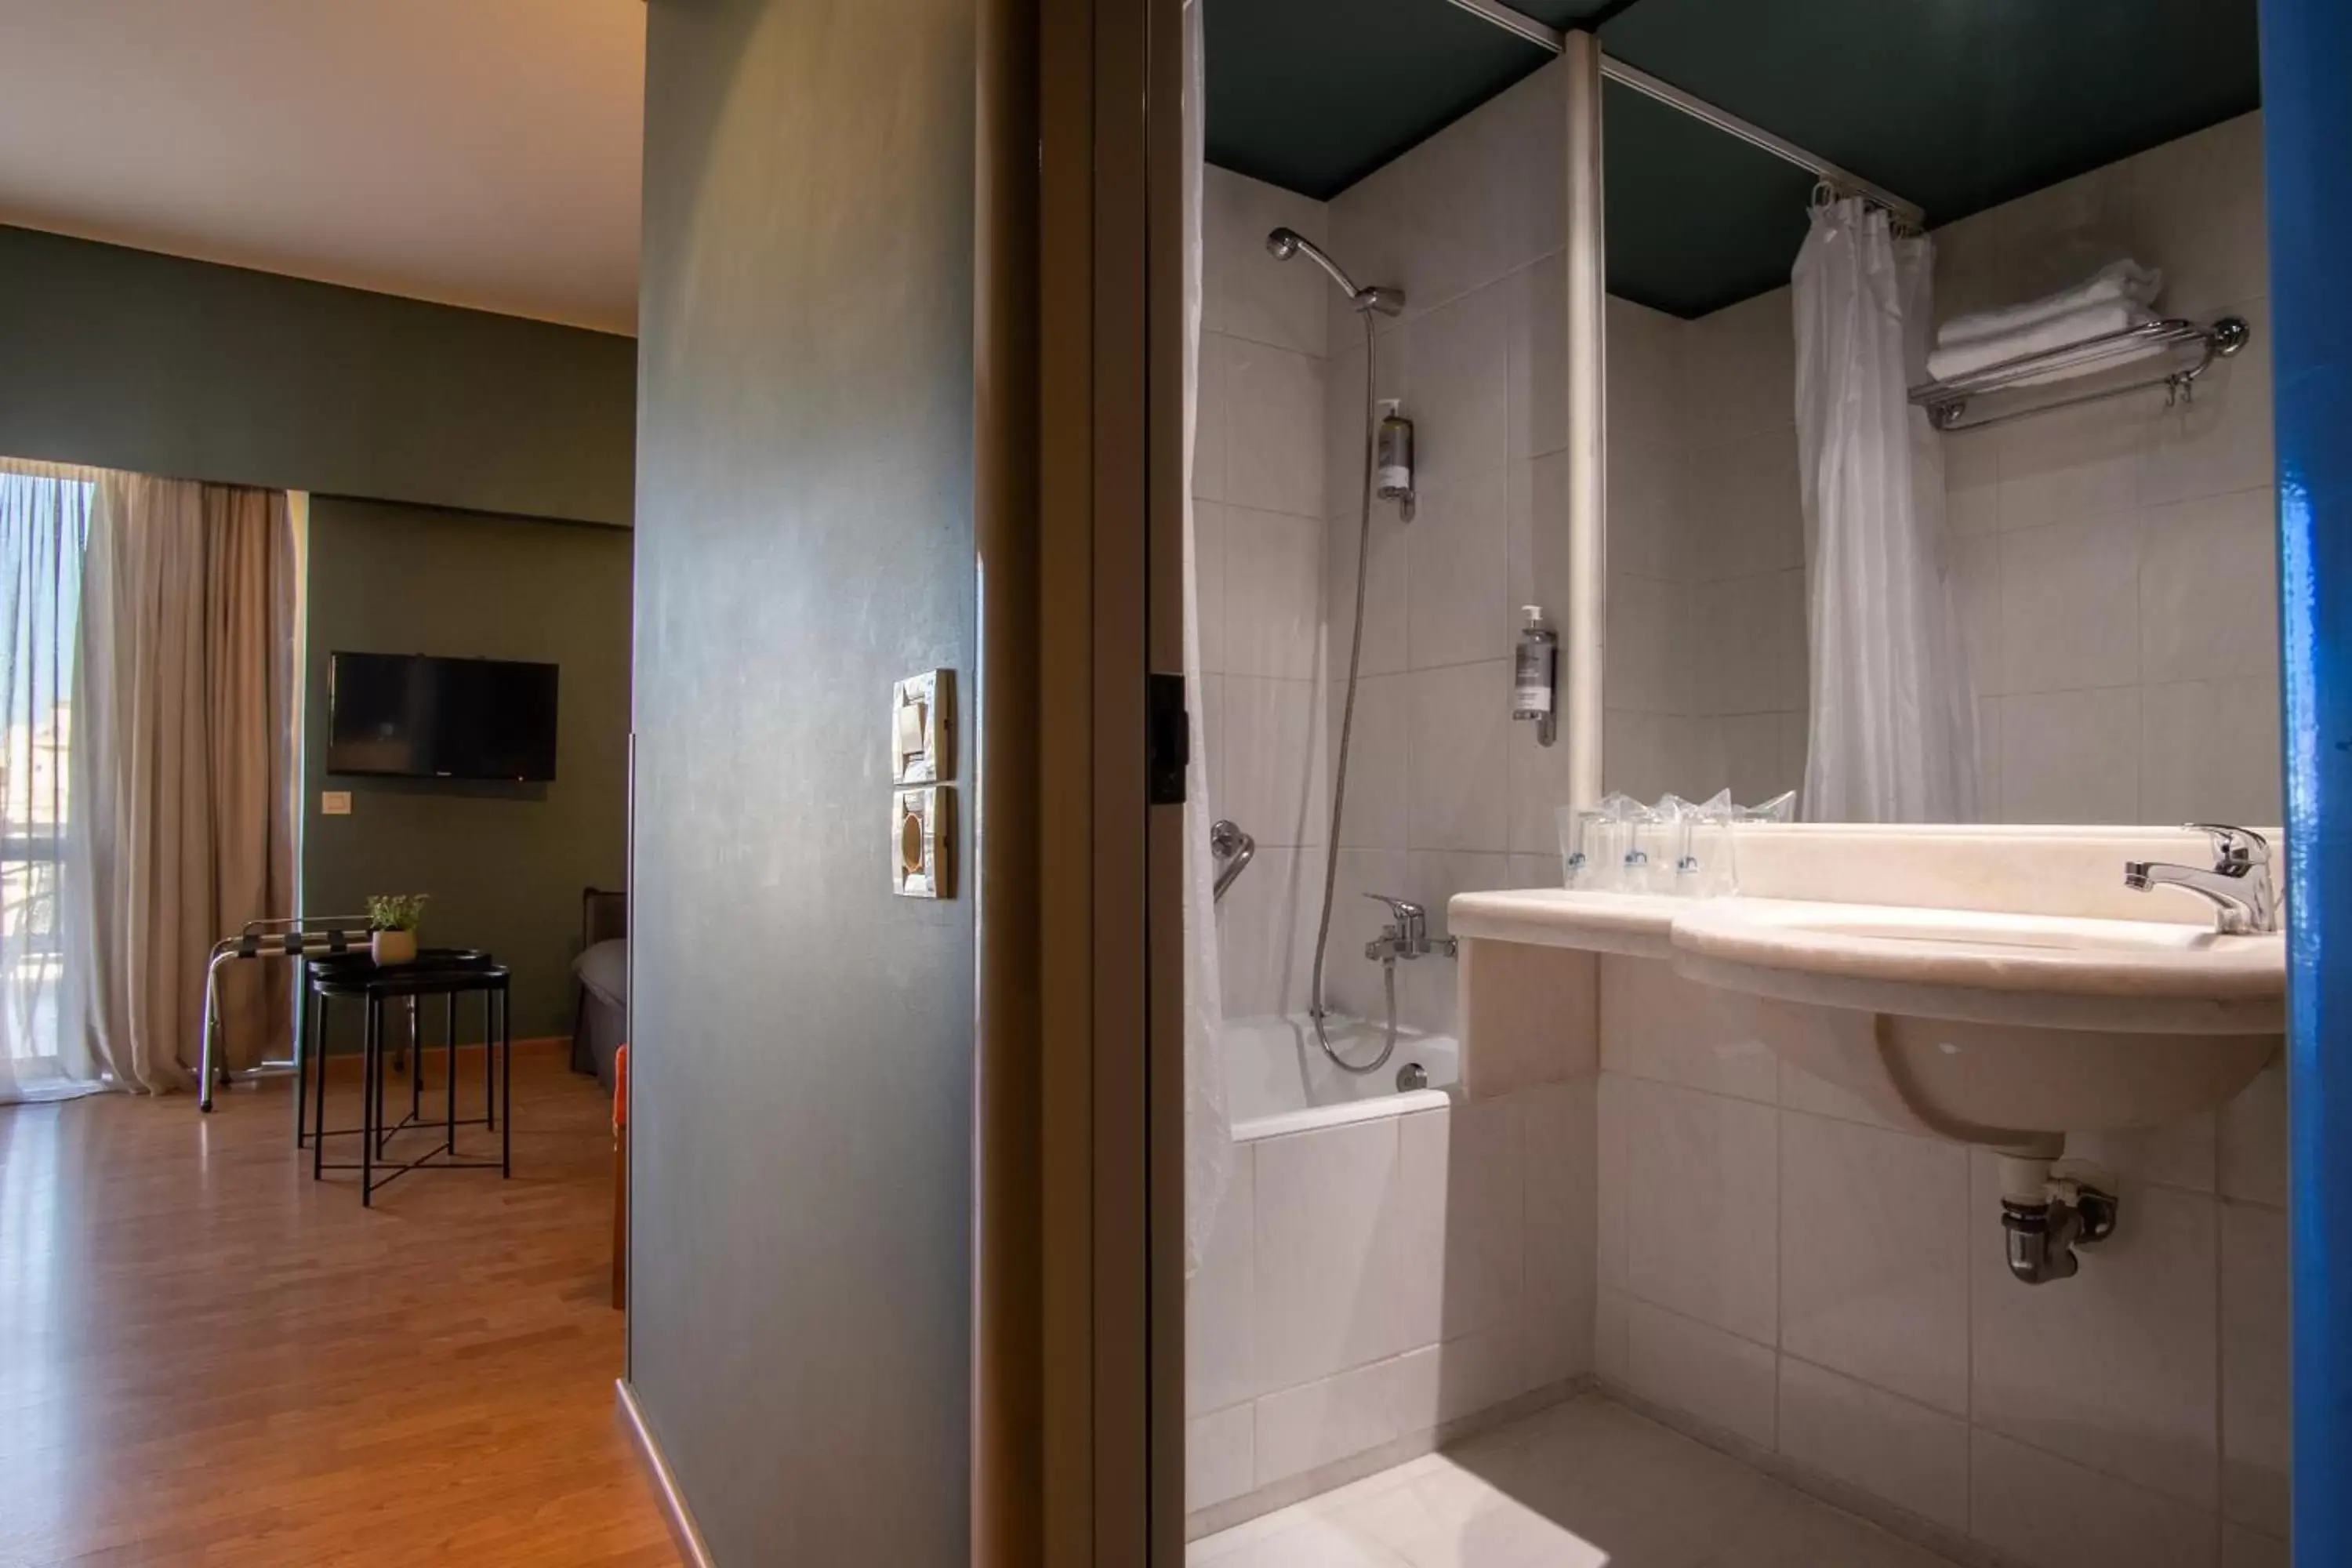 Bathroom in Olympic Hotel